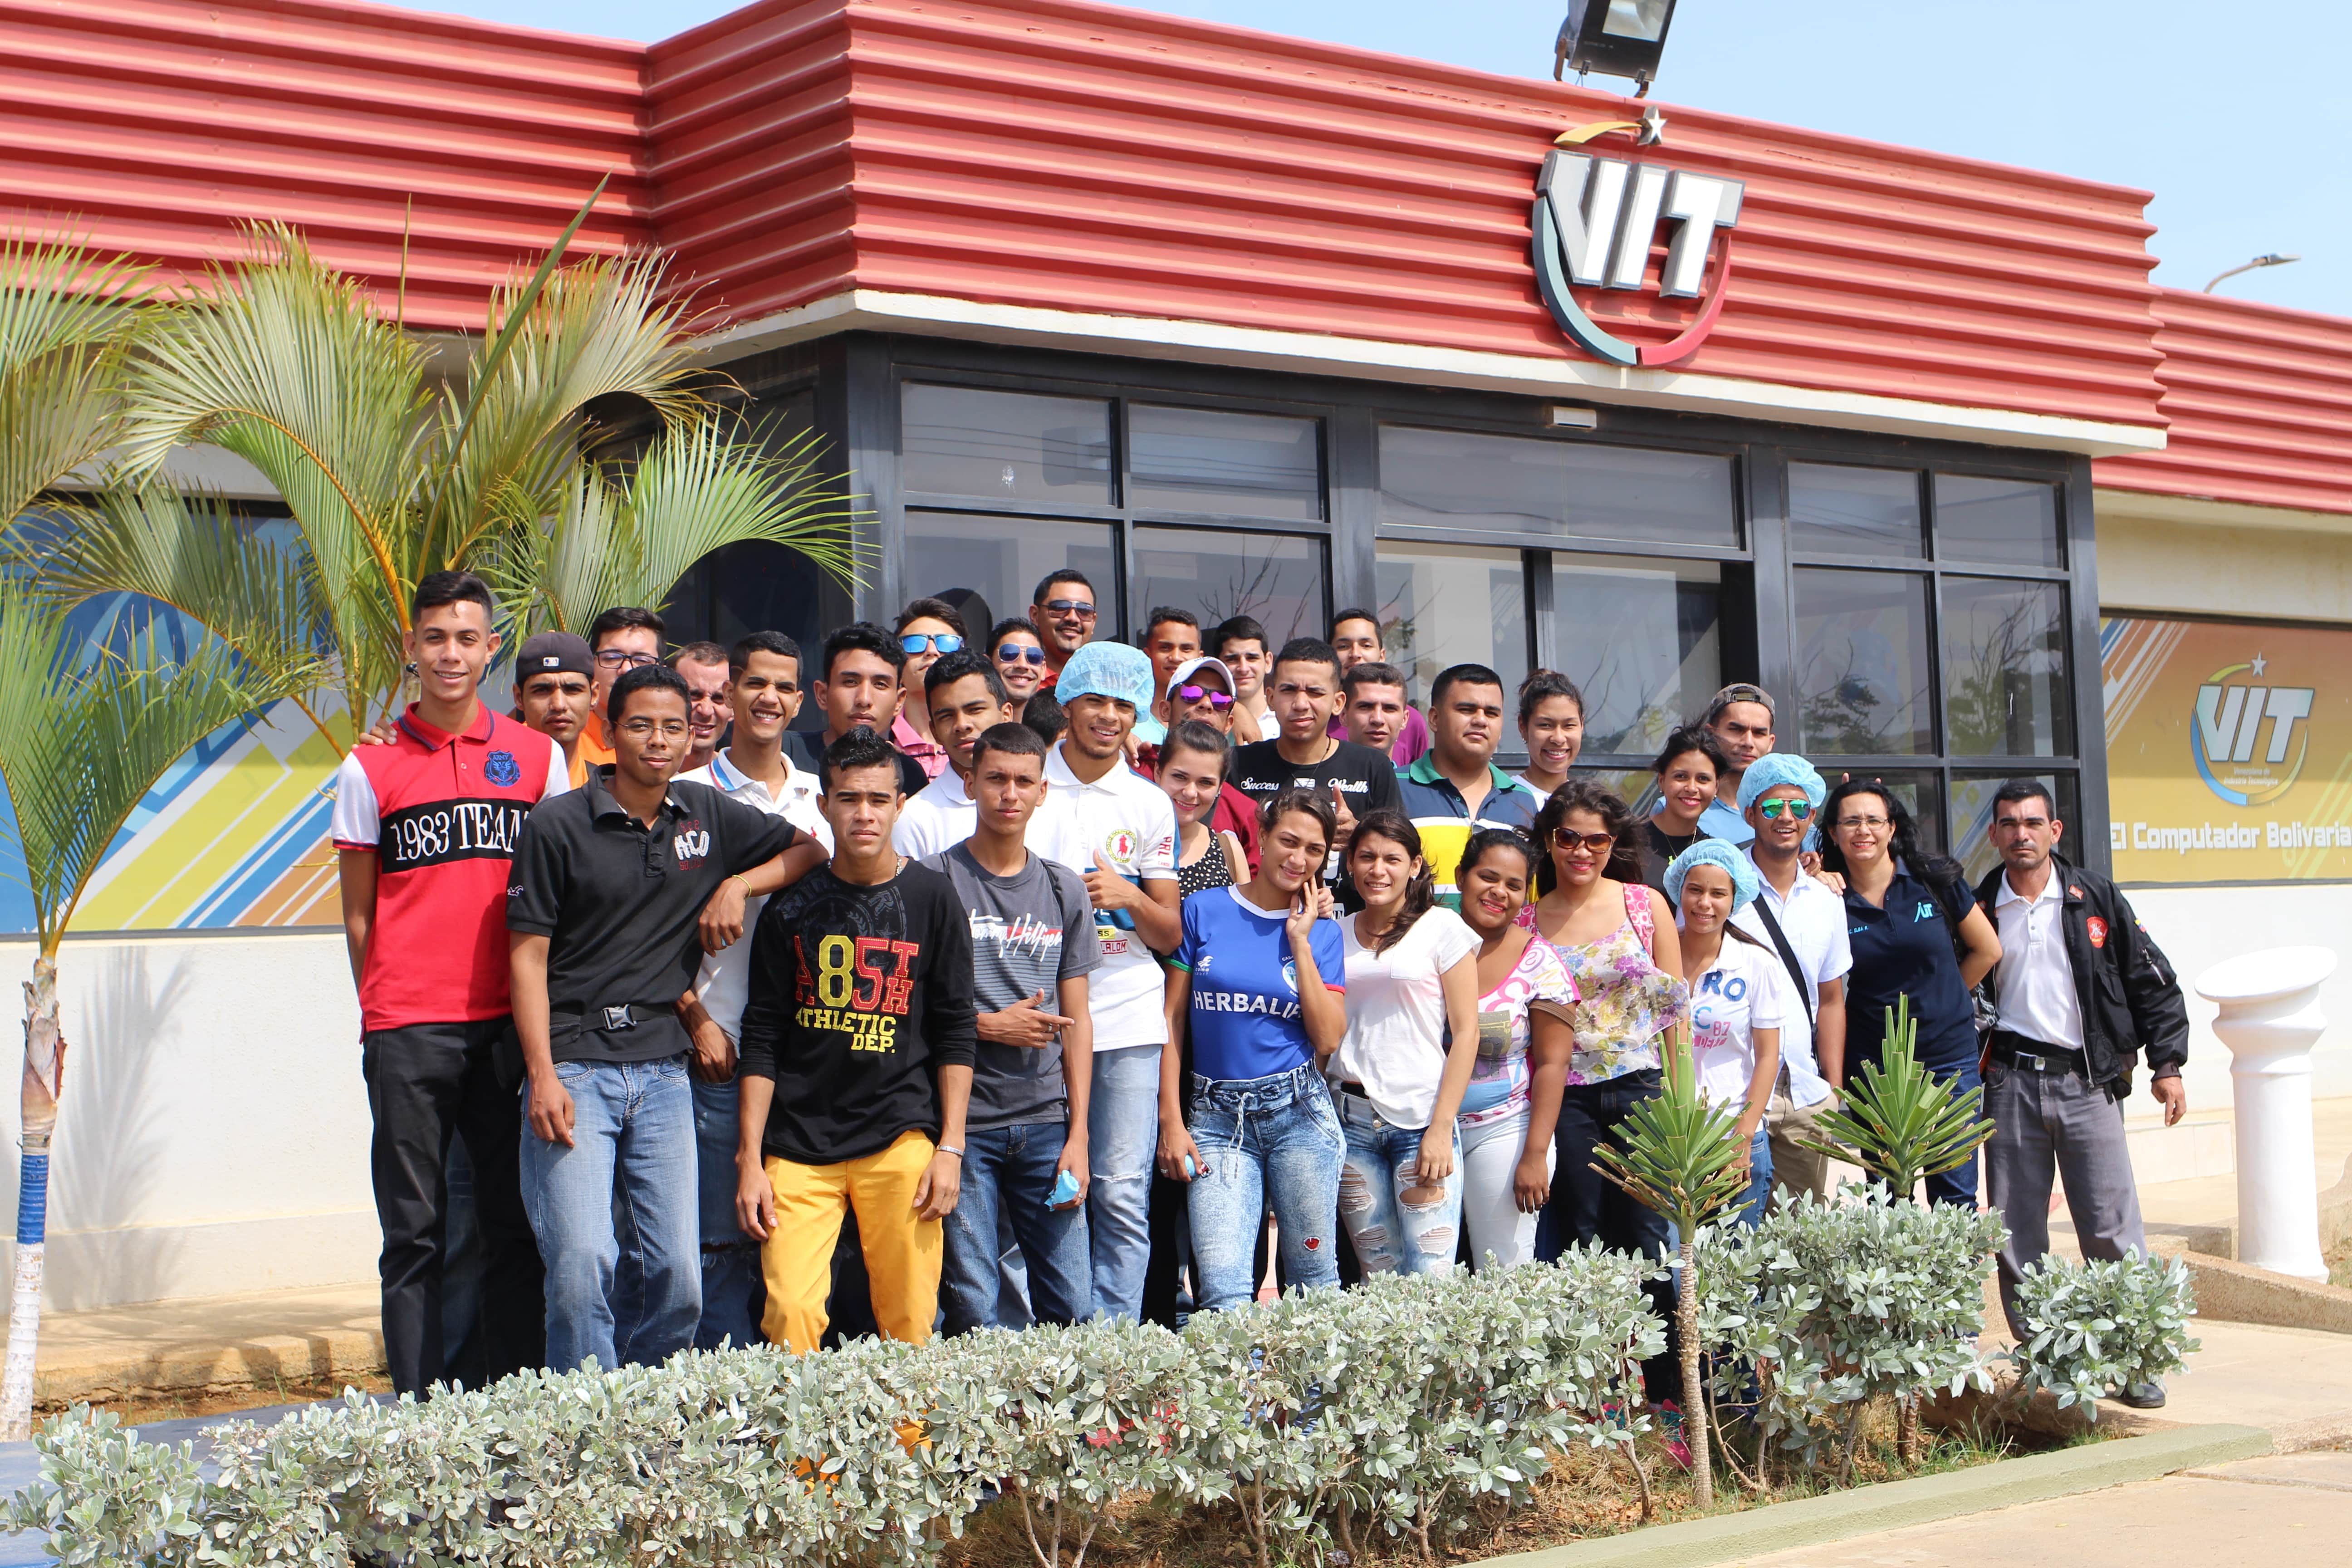 Instituto universitario de Maracaibo llega a VIT